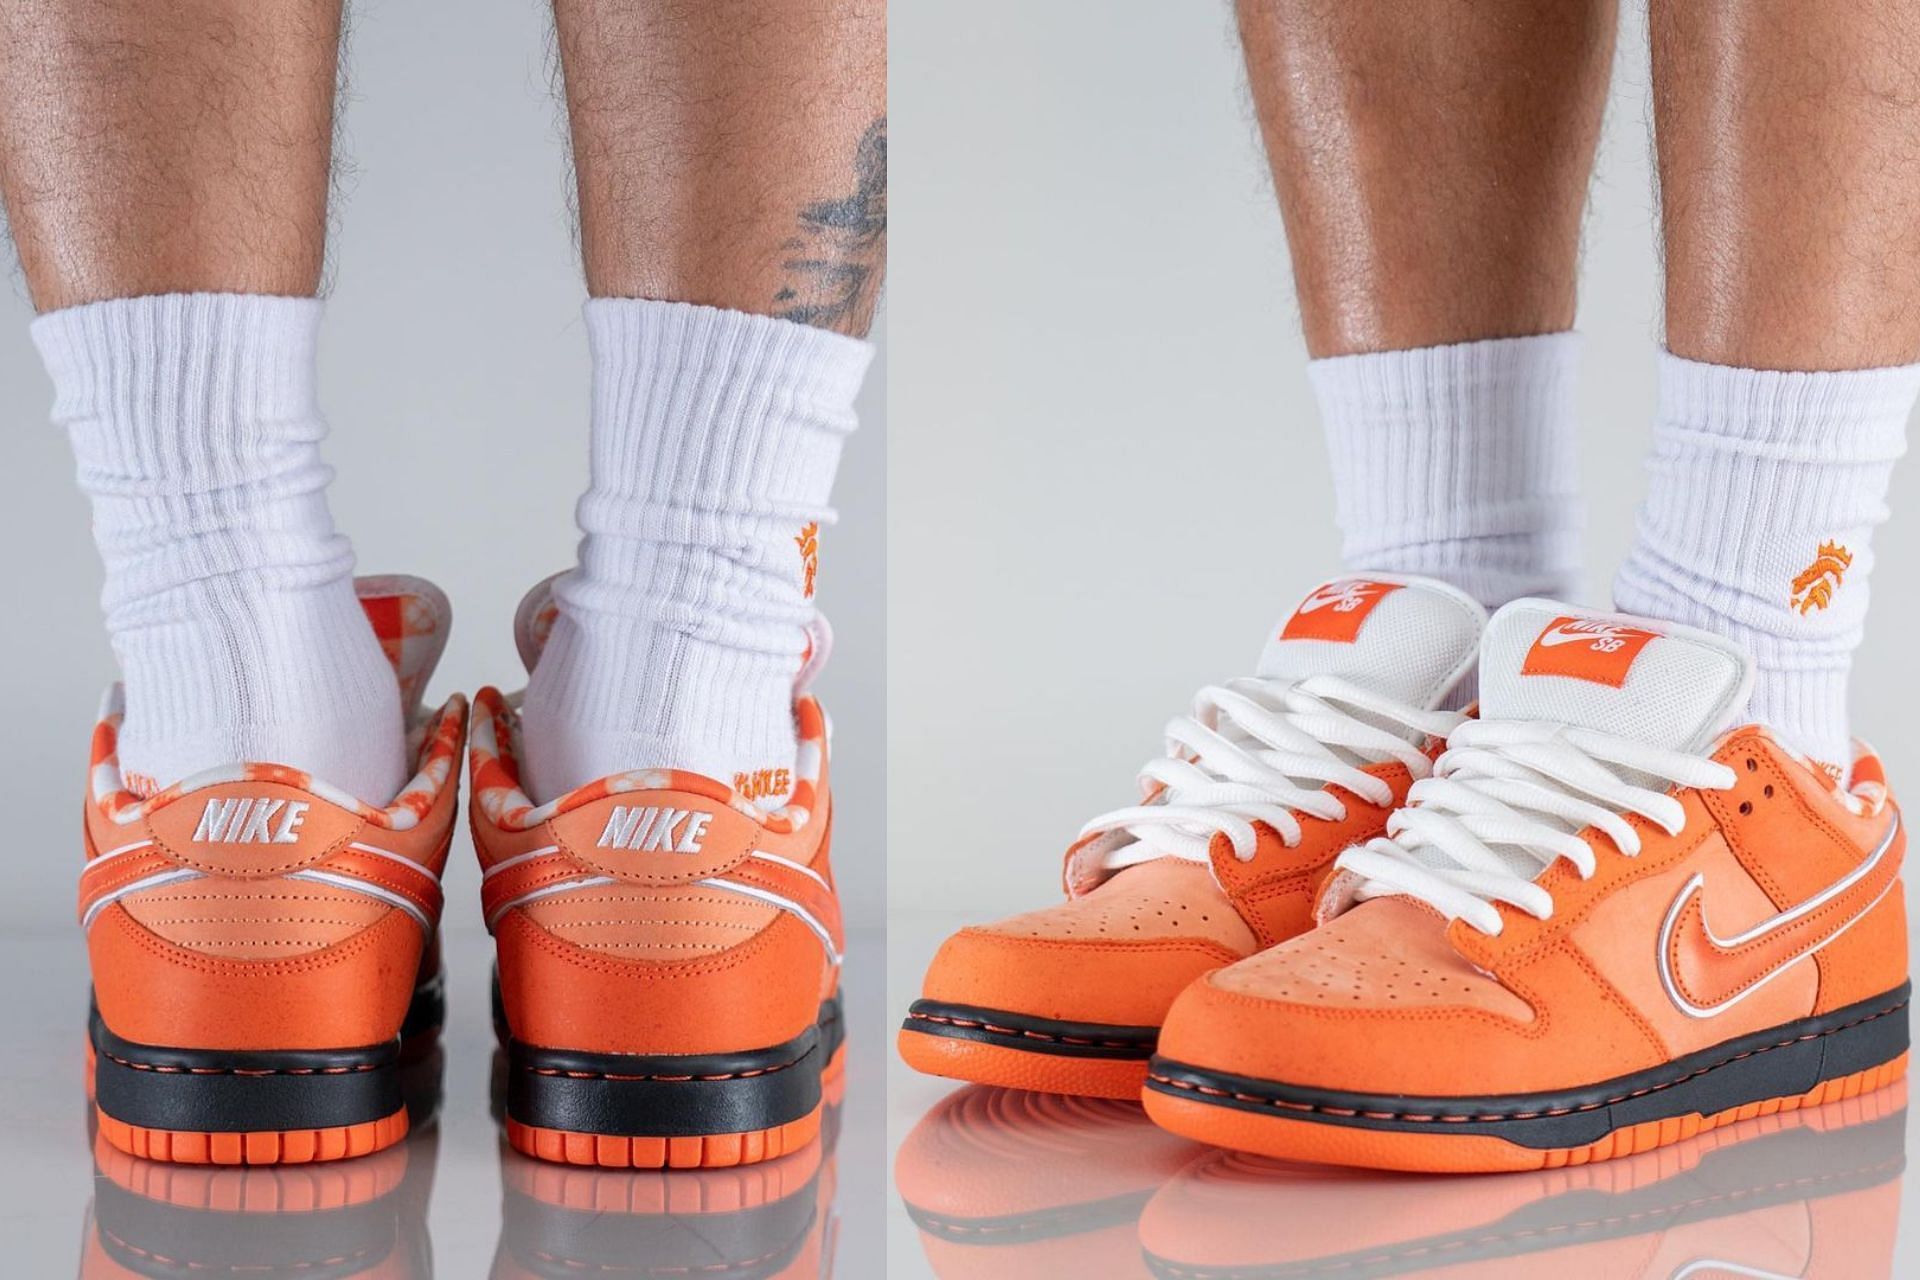 Upcoming Concepts x Nike SB Dunk Low Orange Lobster sneakers (Image via @yankeekicks / Instagram)